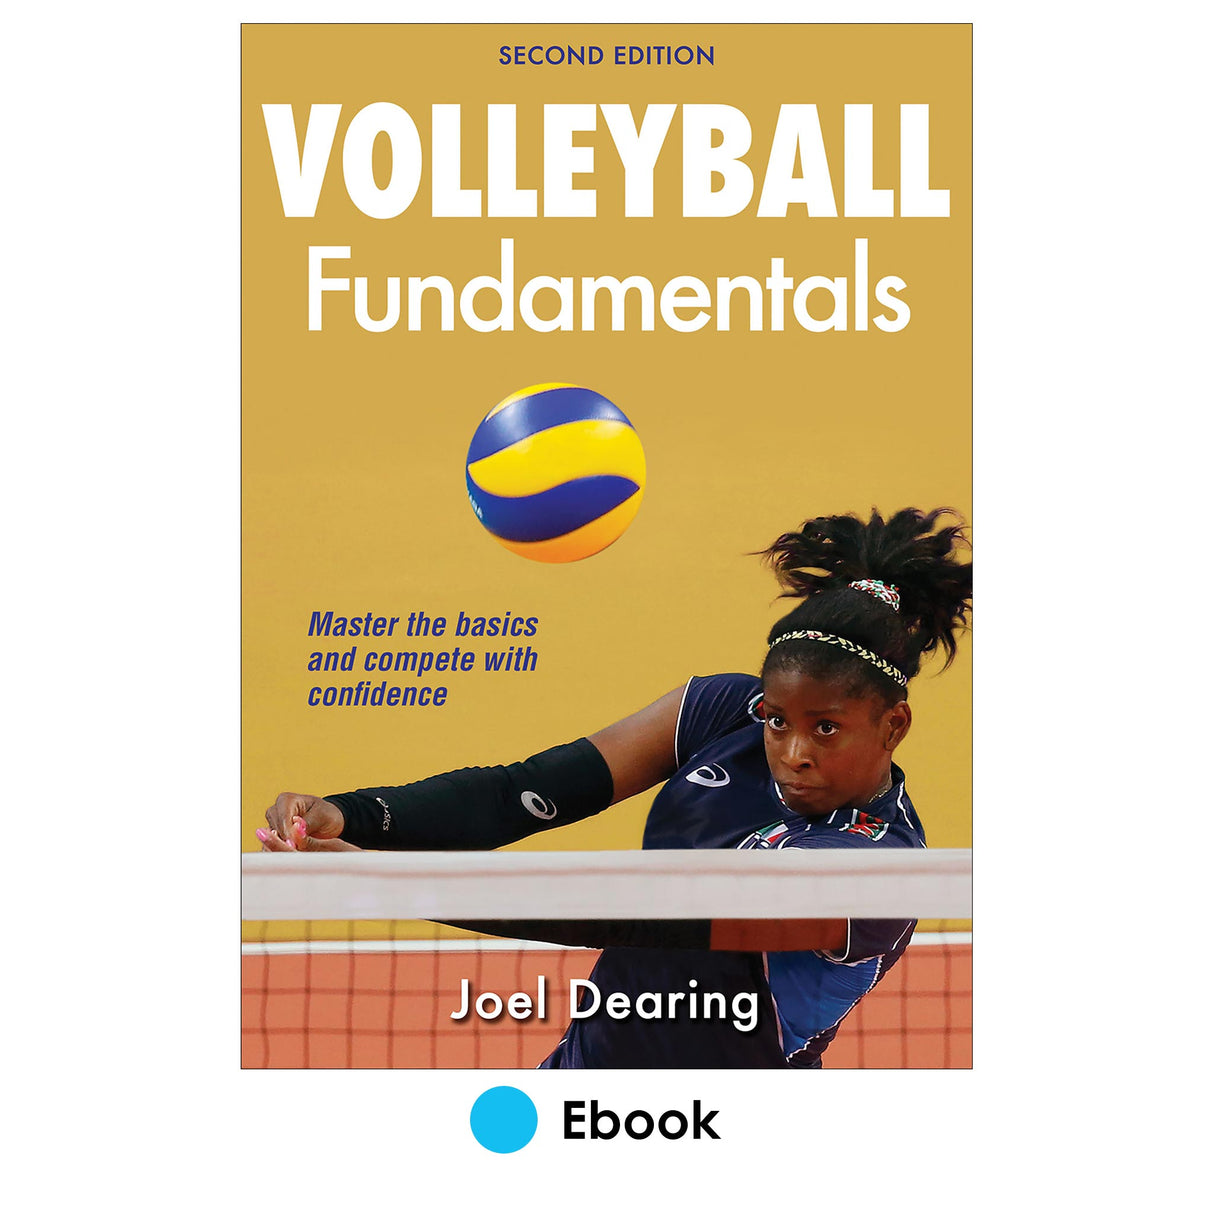 Volleyball Fundamentals 2nd Edition epub